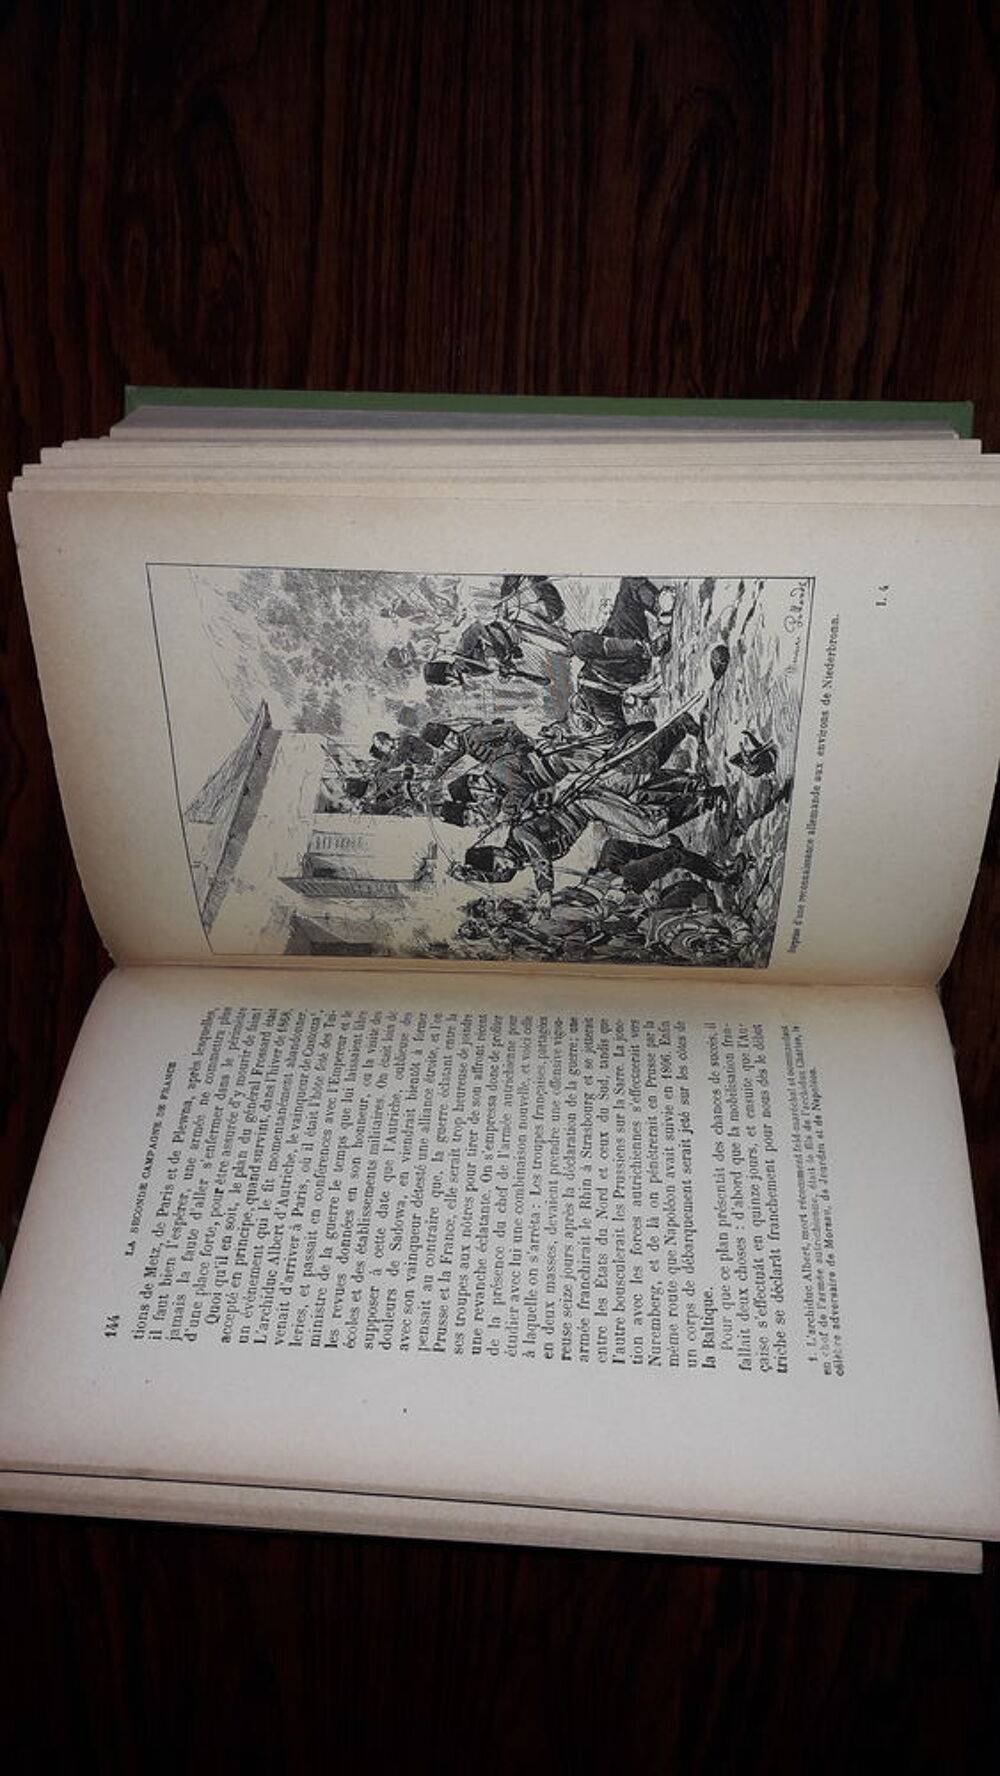 Histoire g&eacute;n&eacute;rale de la guerre franco-allemande 1870-71 Livres et BD